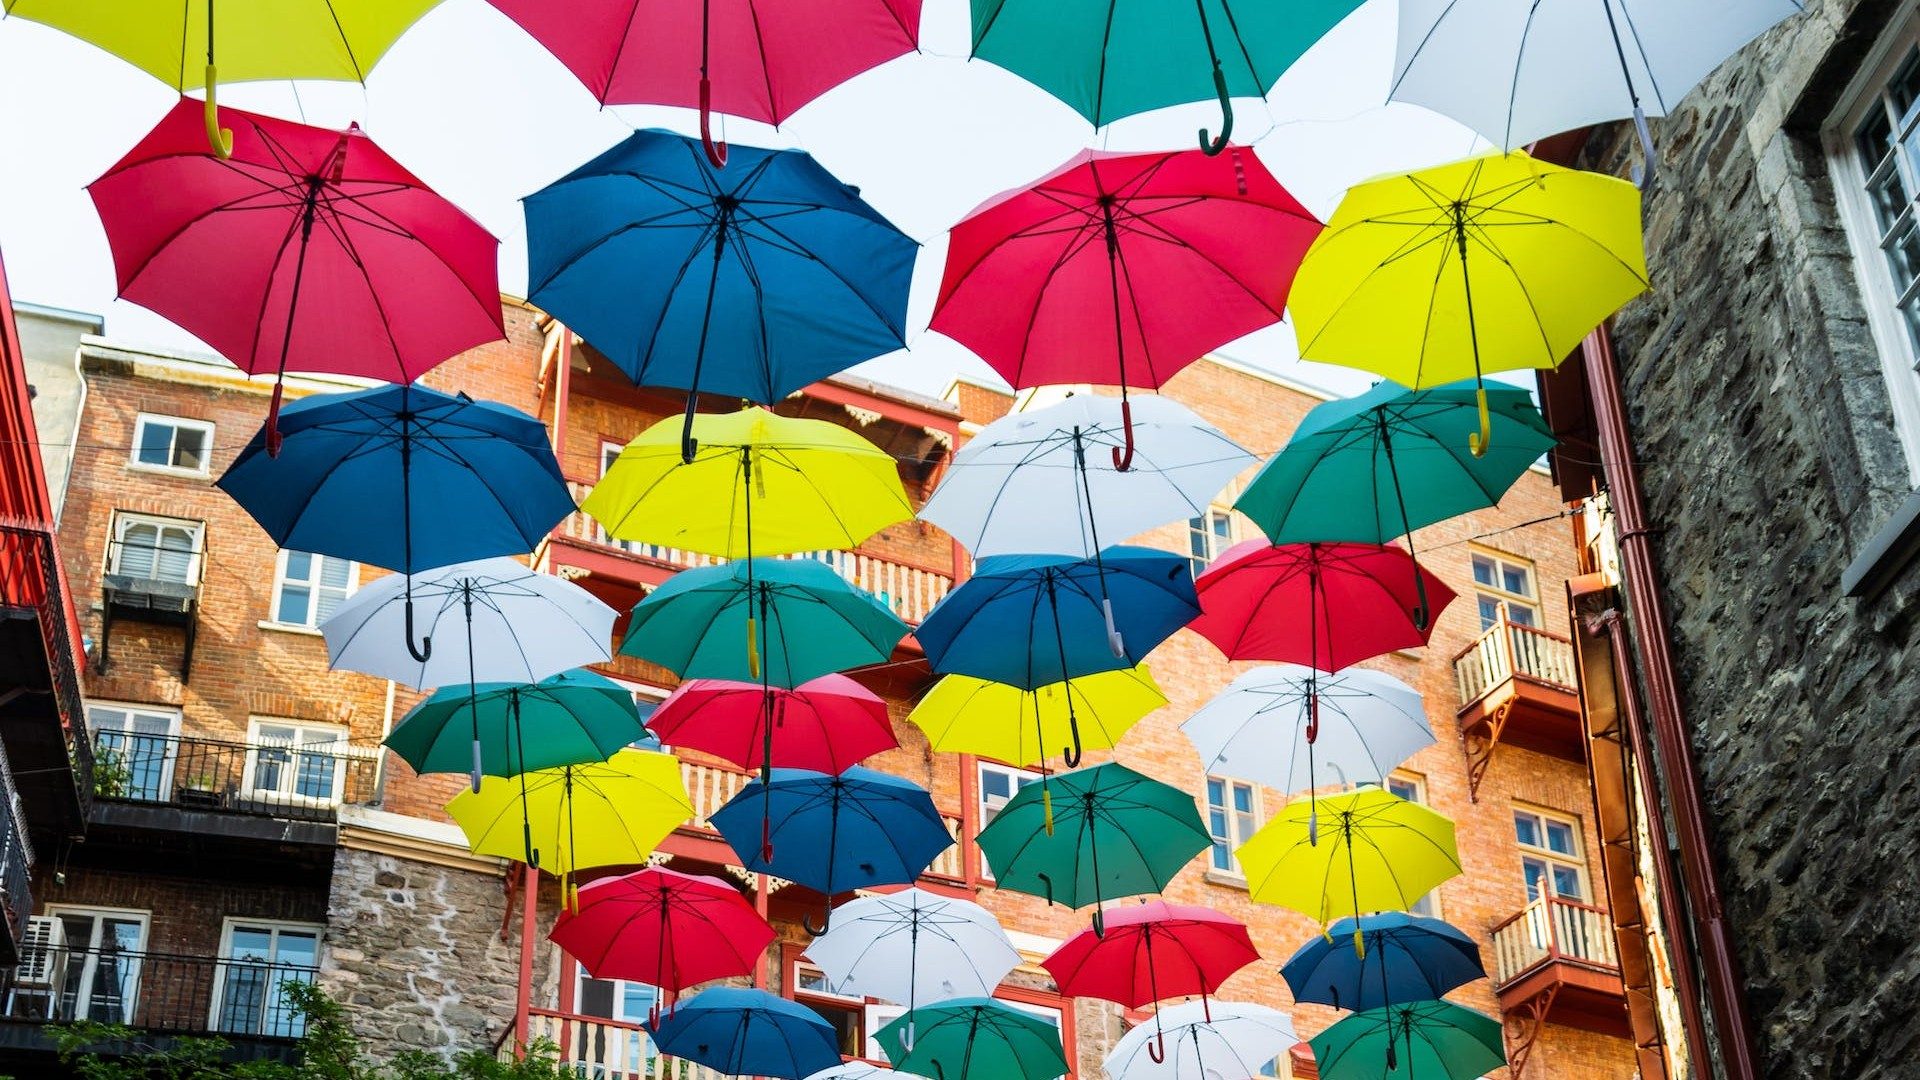 Viele bunte Regenschirme in einer alten Gasse